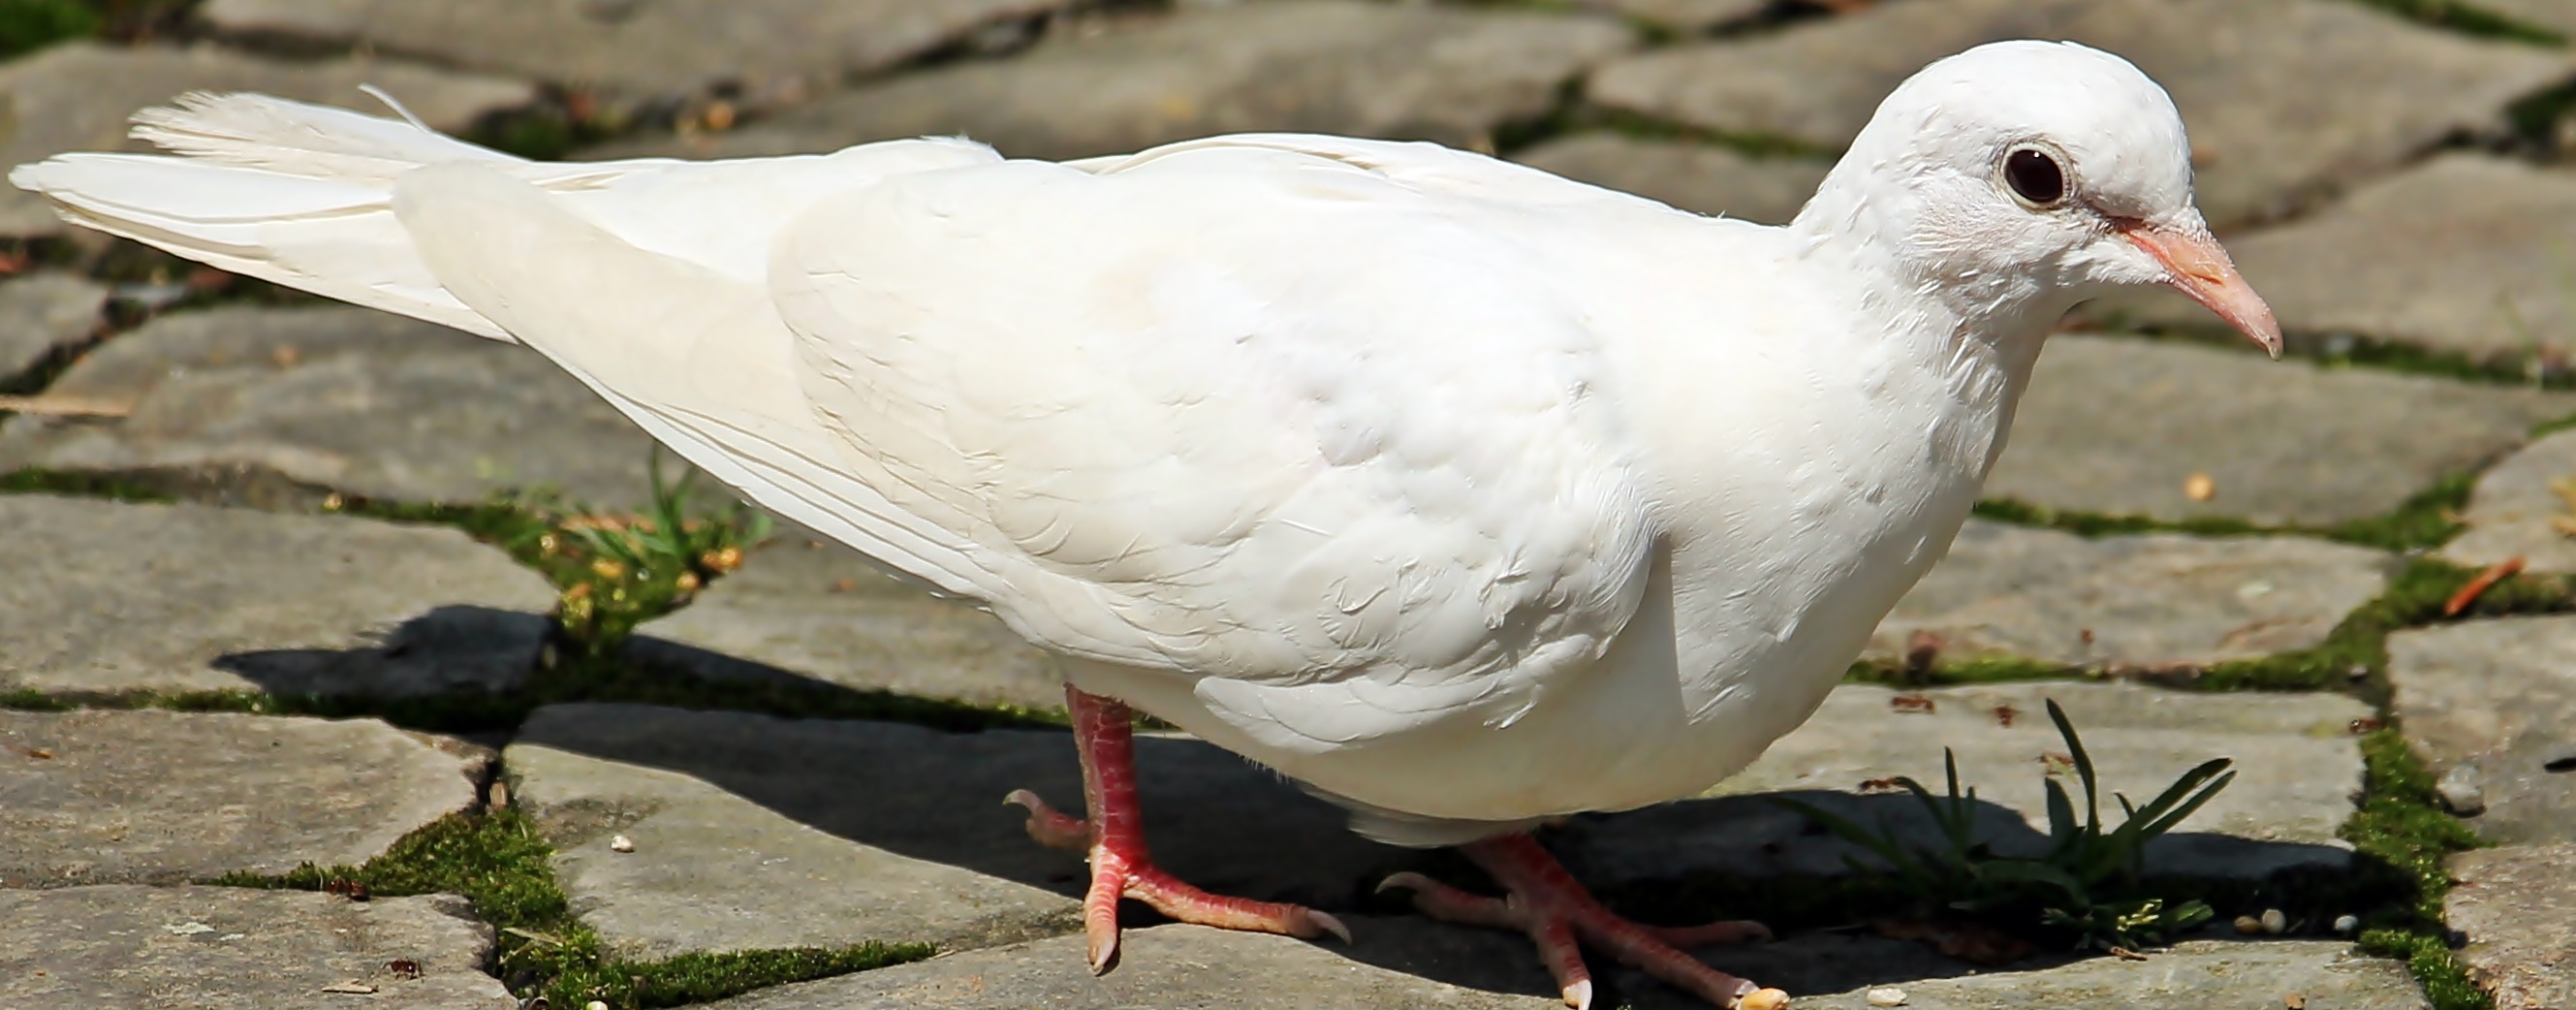 White dove photo